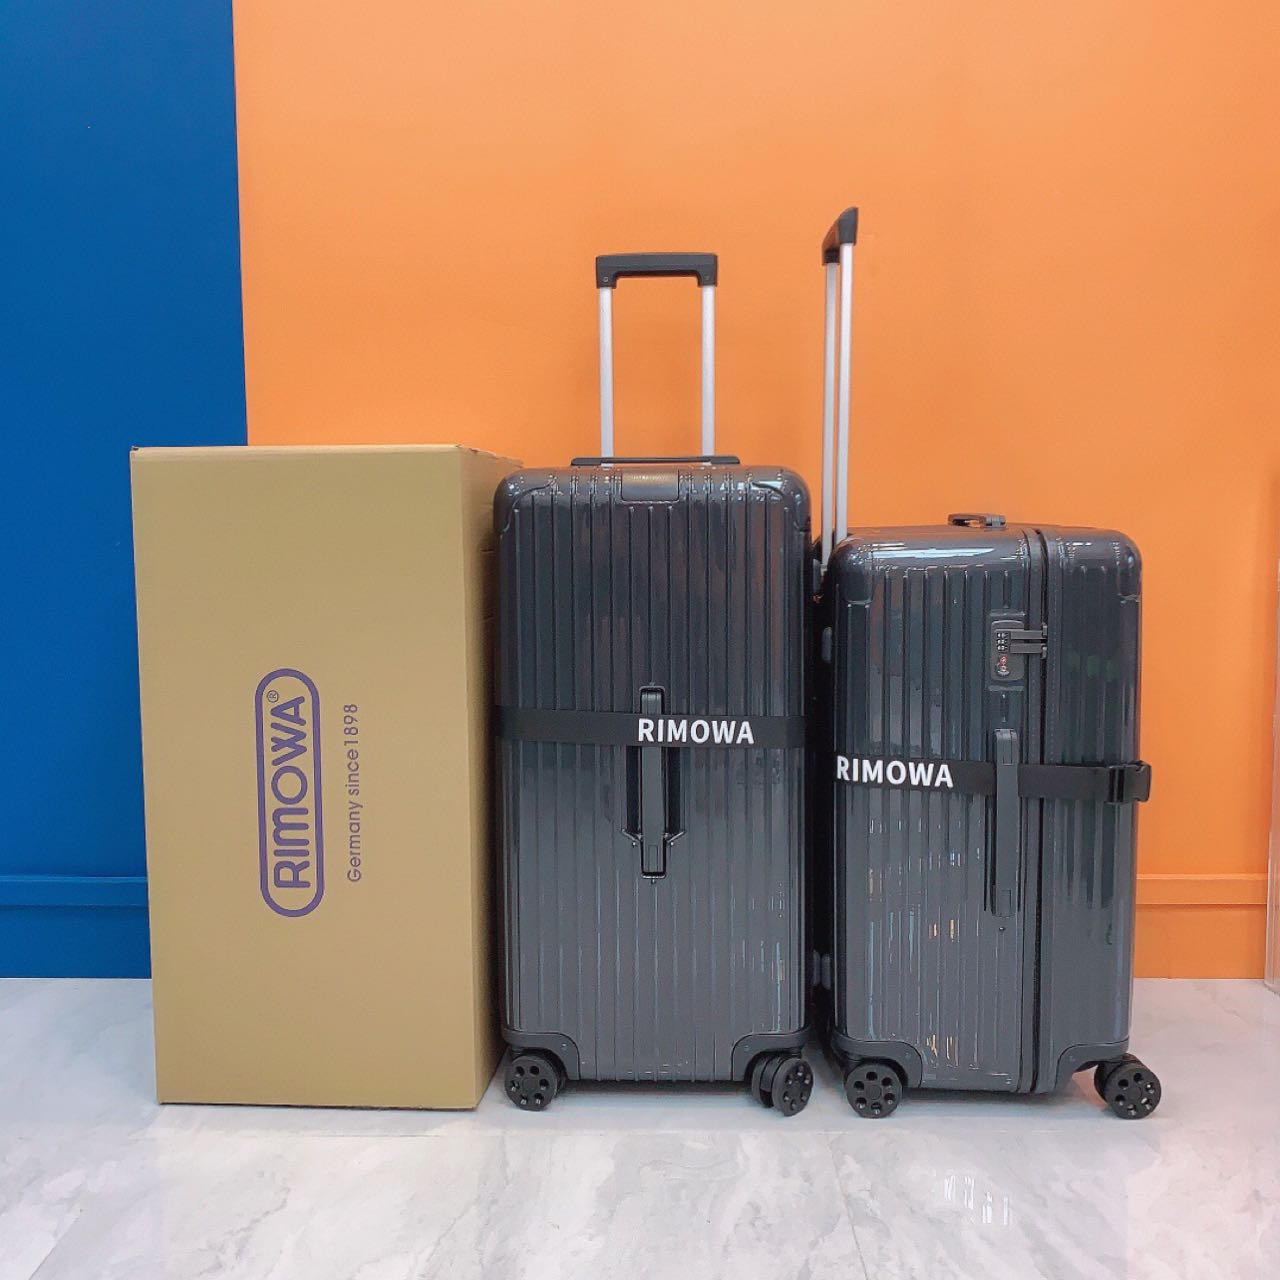 Rimowa Luggage - everydesigner